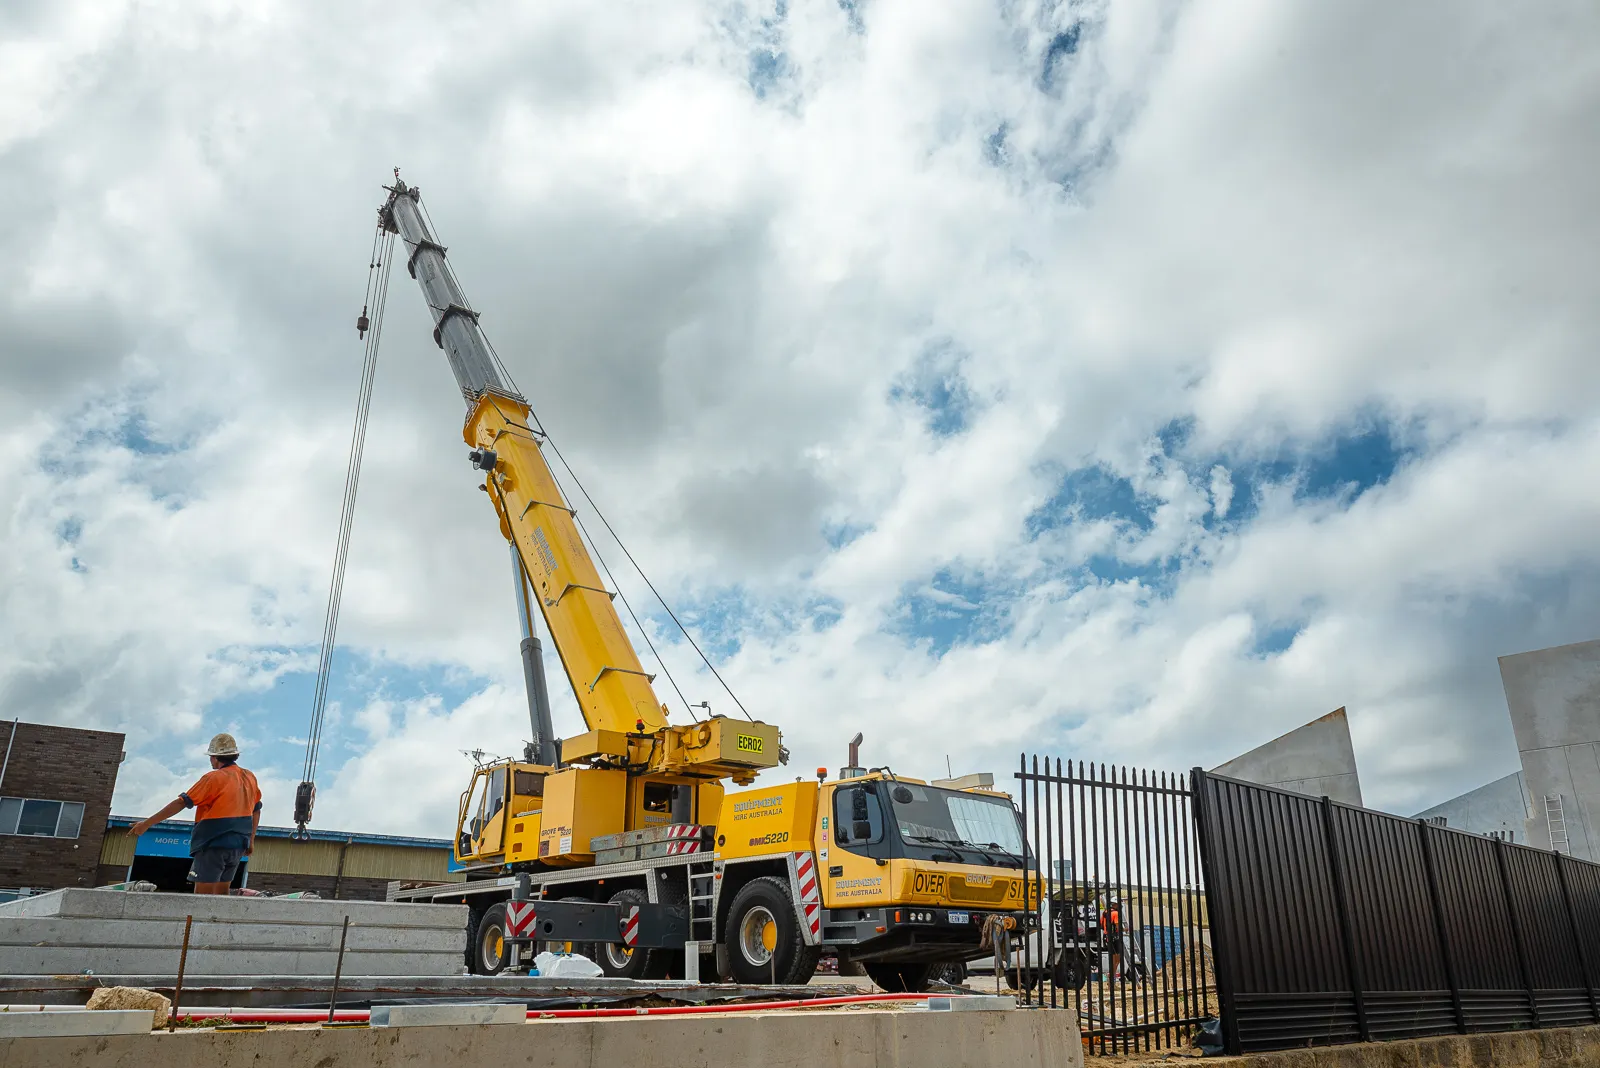 JD Rigging & Construction, Equipment Hire Australia crane building a concrete structure